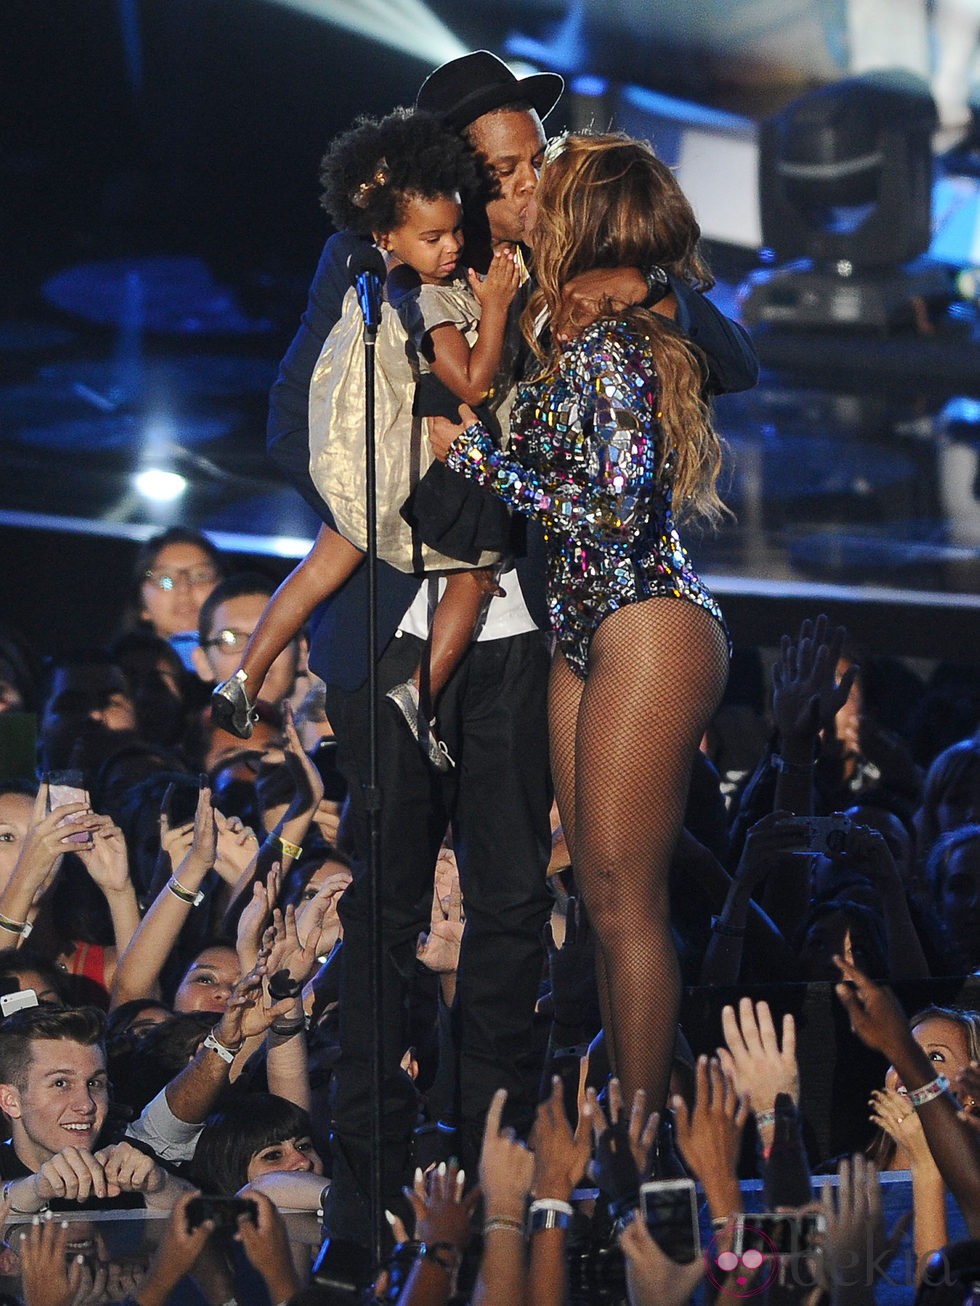 Jay Z con Blue Ivy Carter y besando a Beyoncé en los MTV Video Music Awards 2014